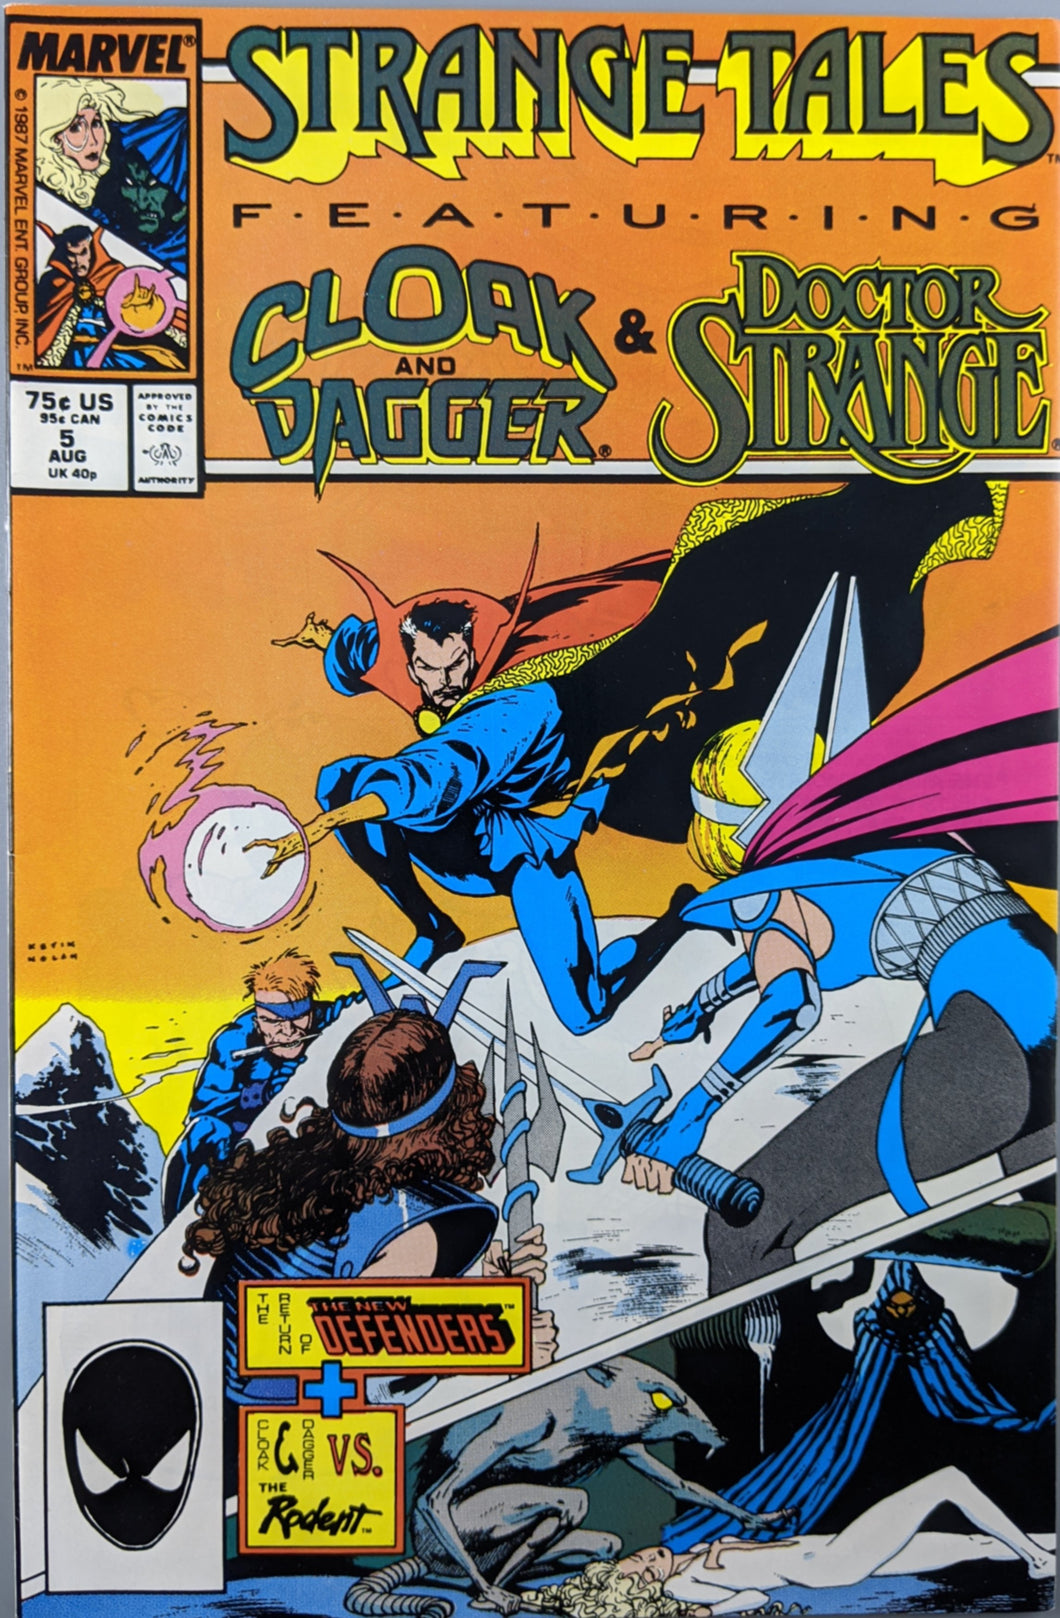 Strange Tales (1987) #5